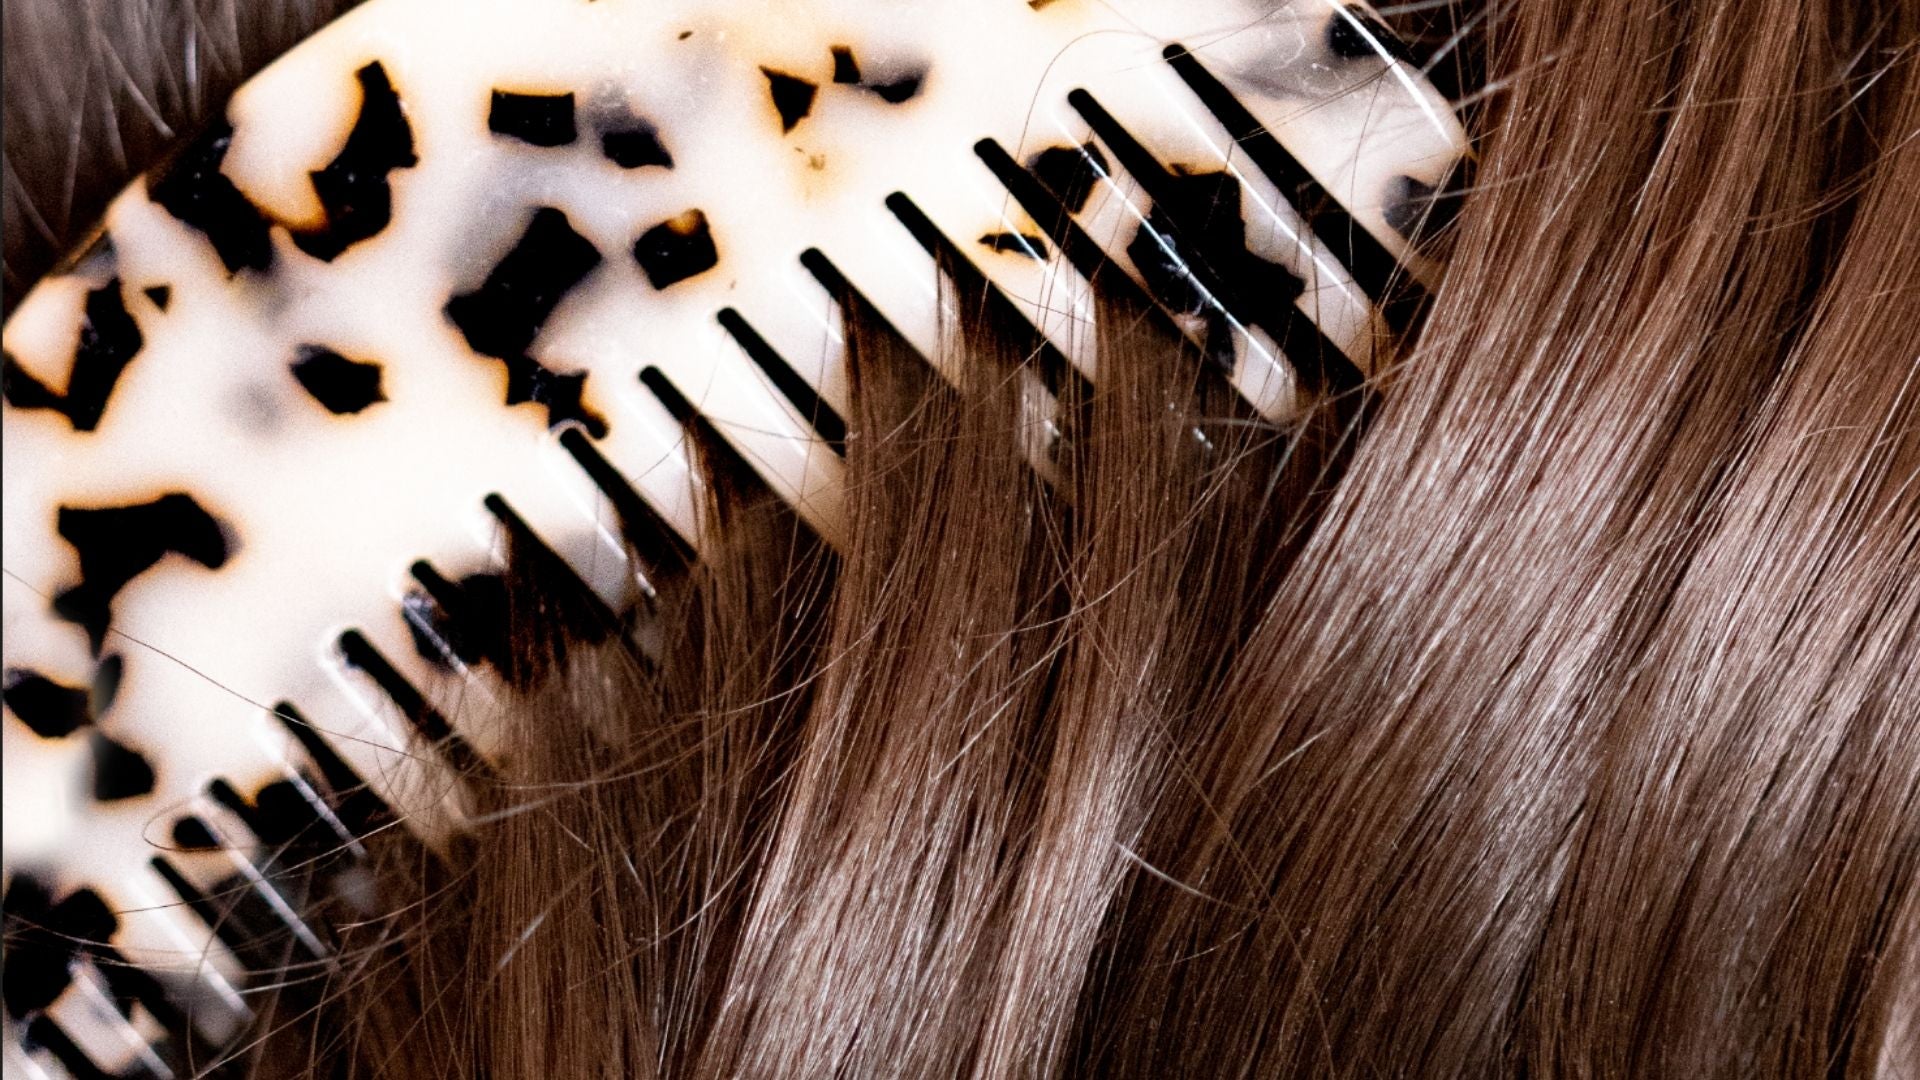 Comment reconnaître des cheveux abîmés et comment leur donner un coup de boost ?